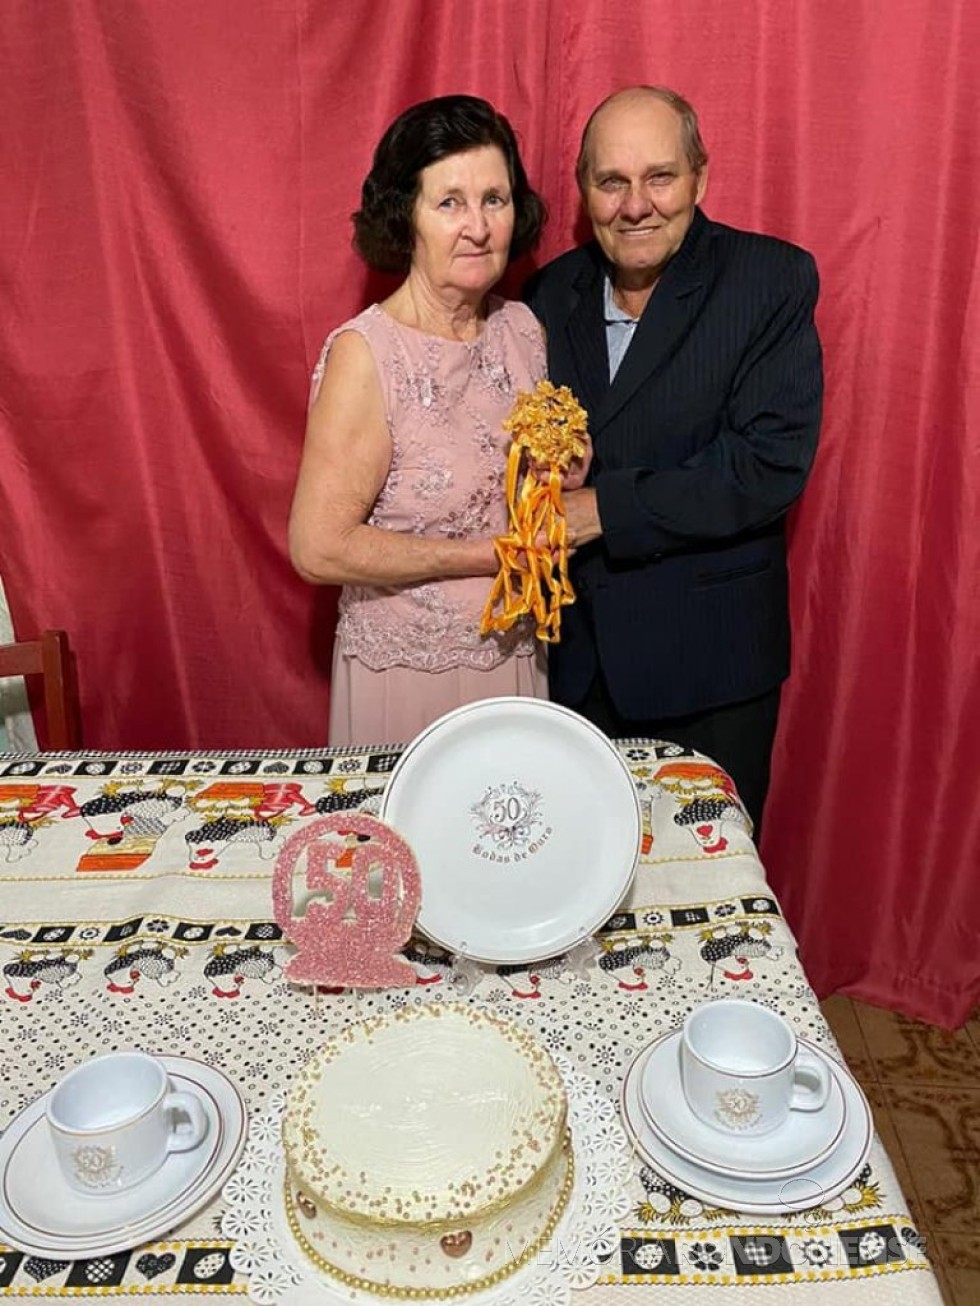 Casal rondonense Dulce e Levino Fenner que comemorou Bodas de Ouro, em julho de 2020.
Imagem: Acervo Jheison Griep - FOTO 14 - 